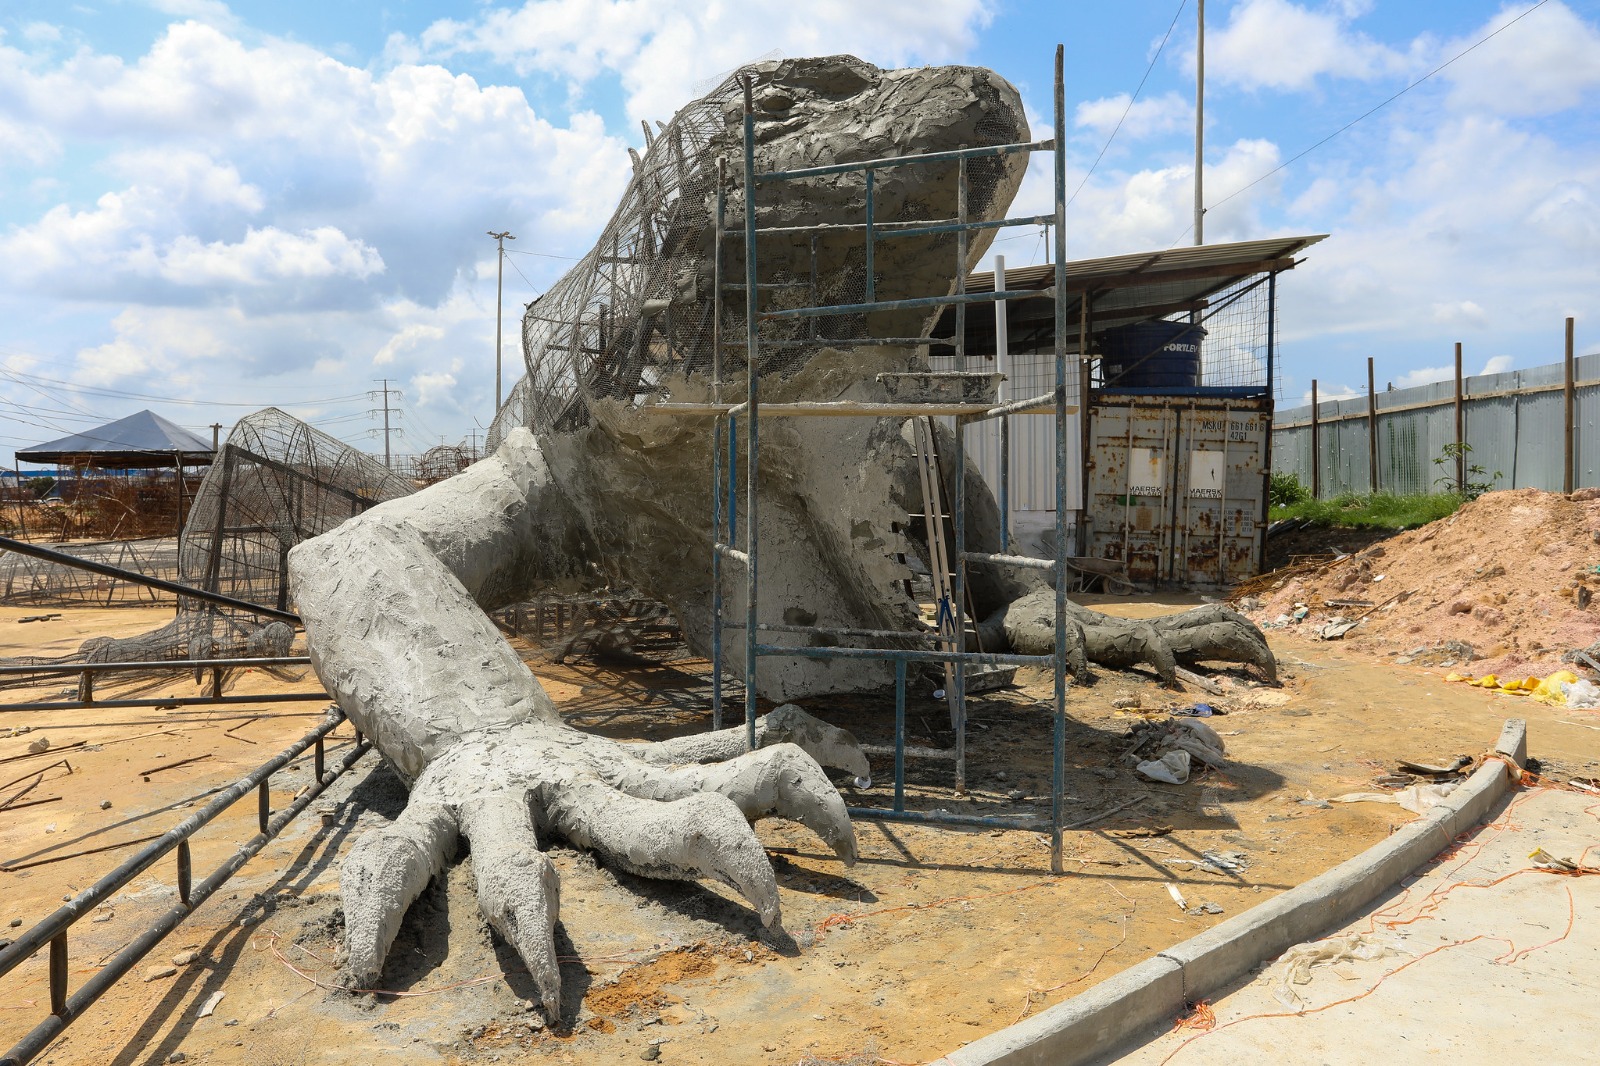 Cenários da segunda etapa do parque Amazonino Mendes ganham animais gigantes construídos pela prefeitura / Foto : Divulgação